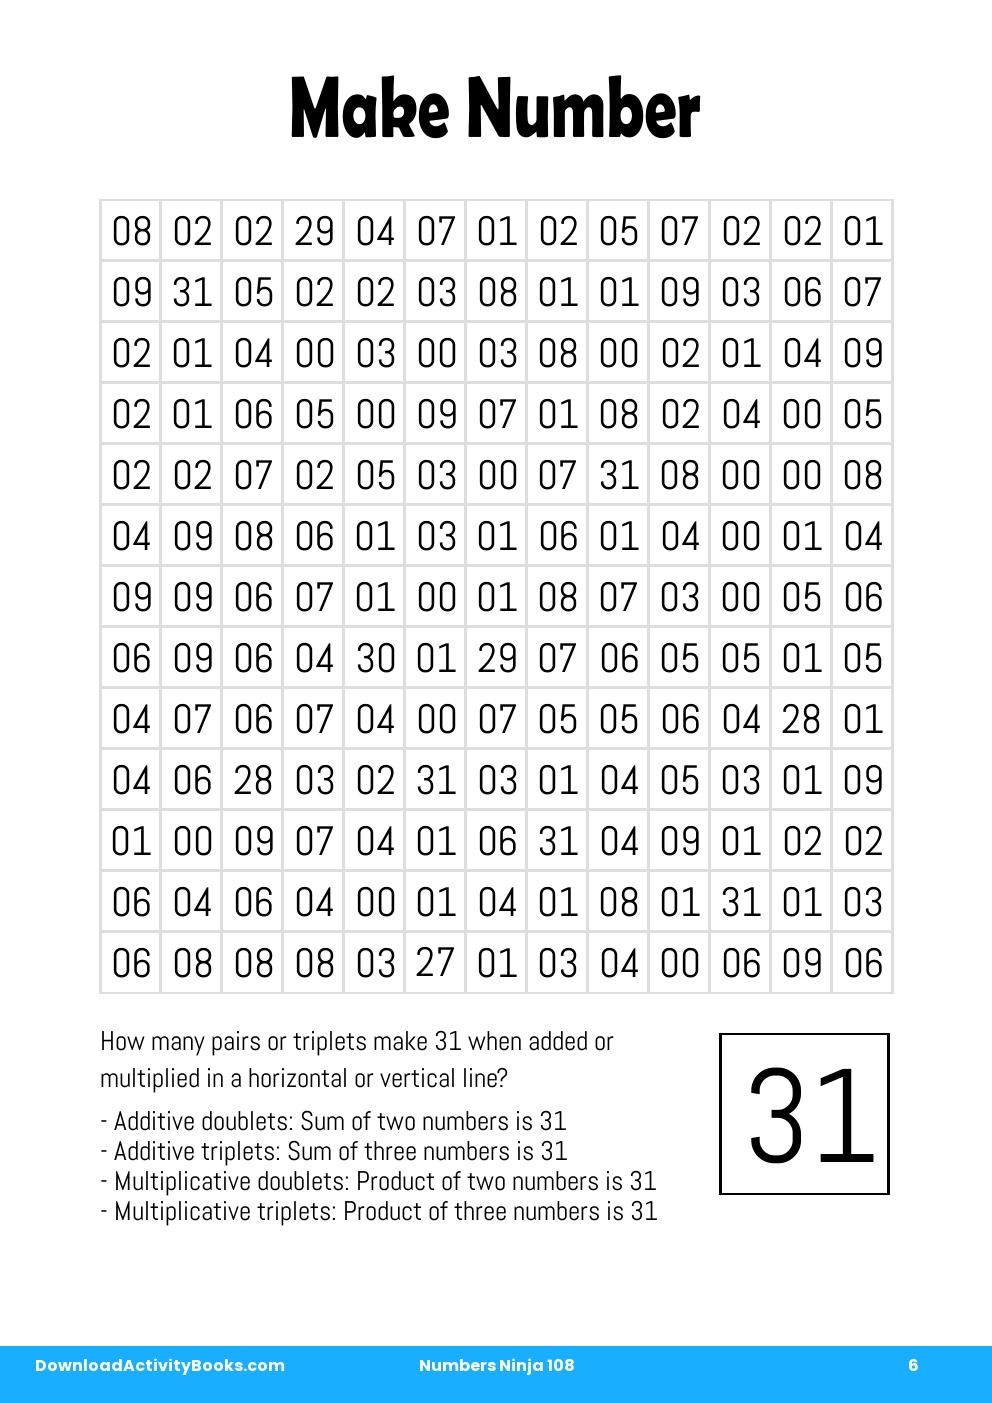 Make Number in Numbers Ninja 108